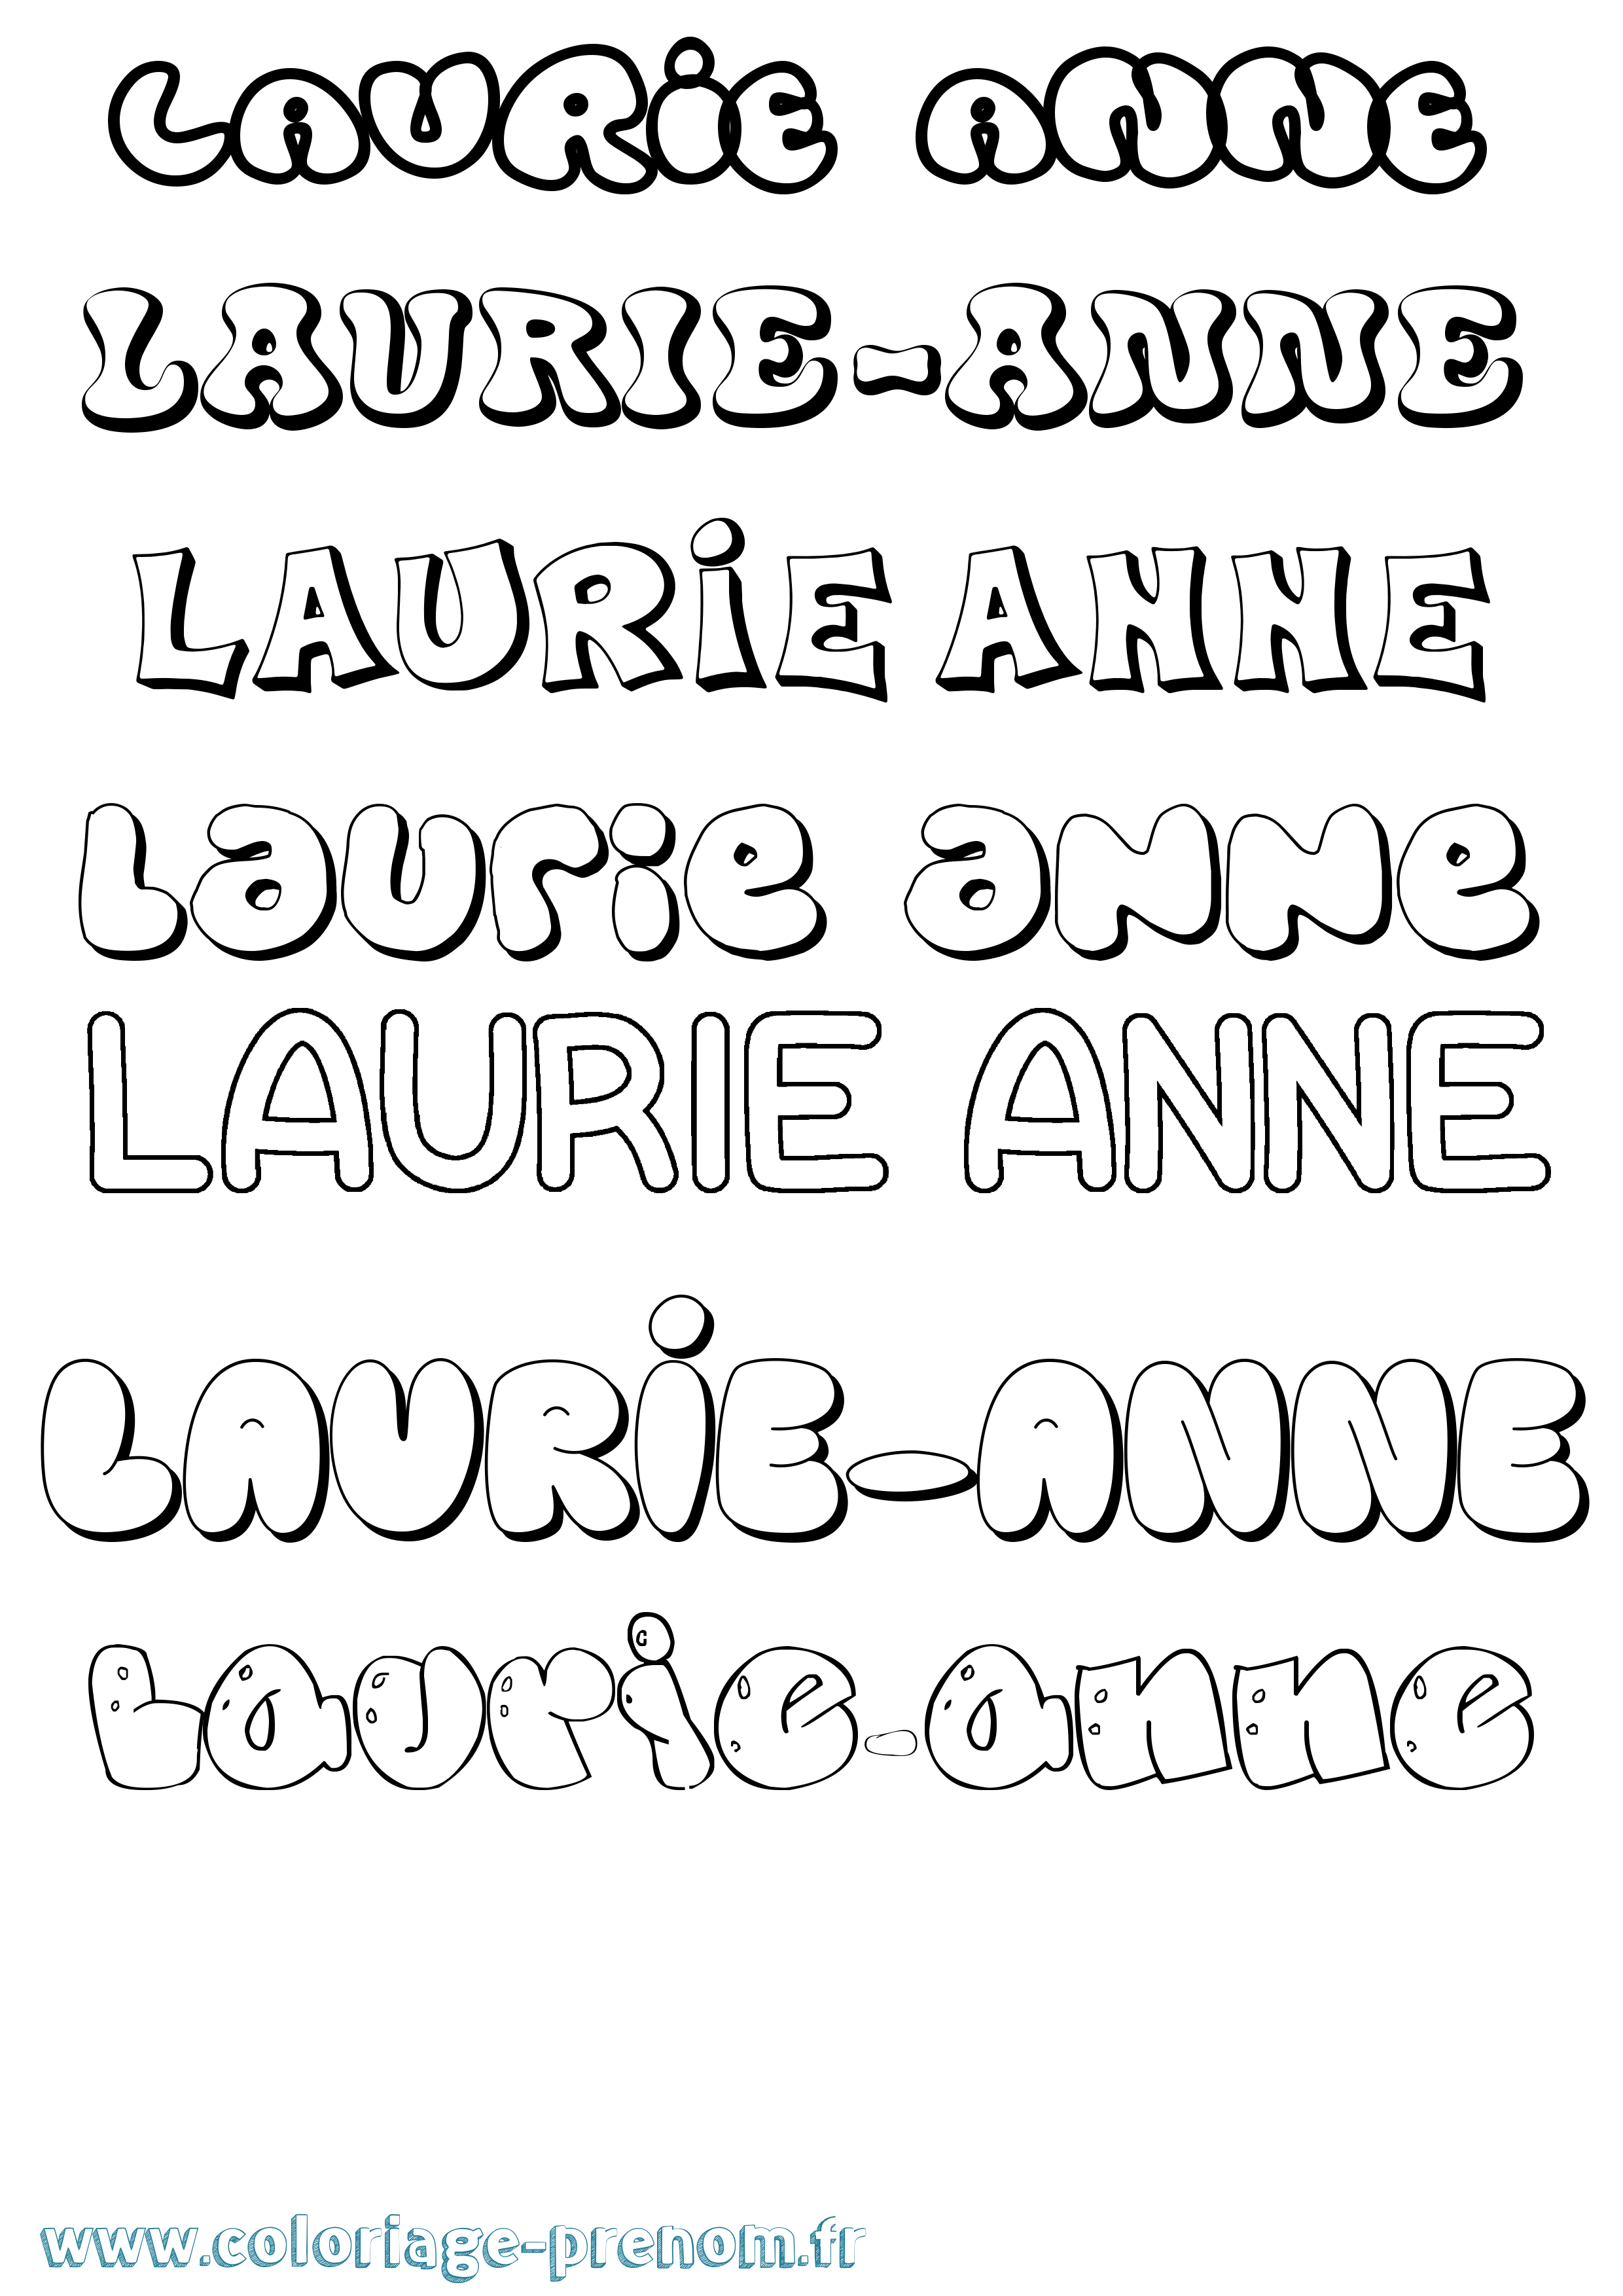 Coloriage prénom Laurie-Anne Bubble